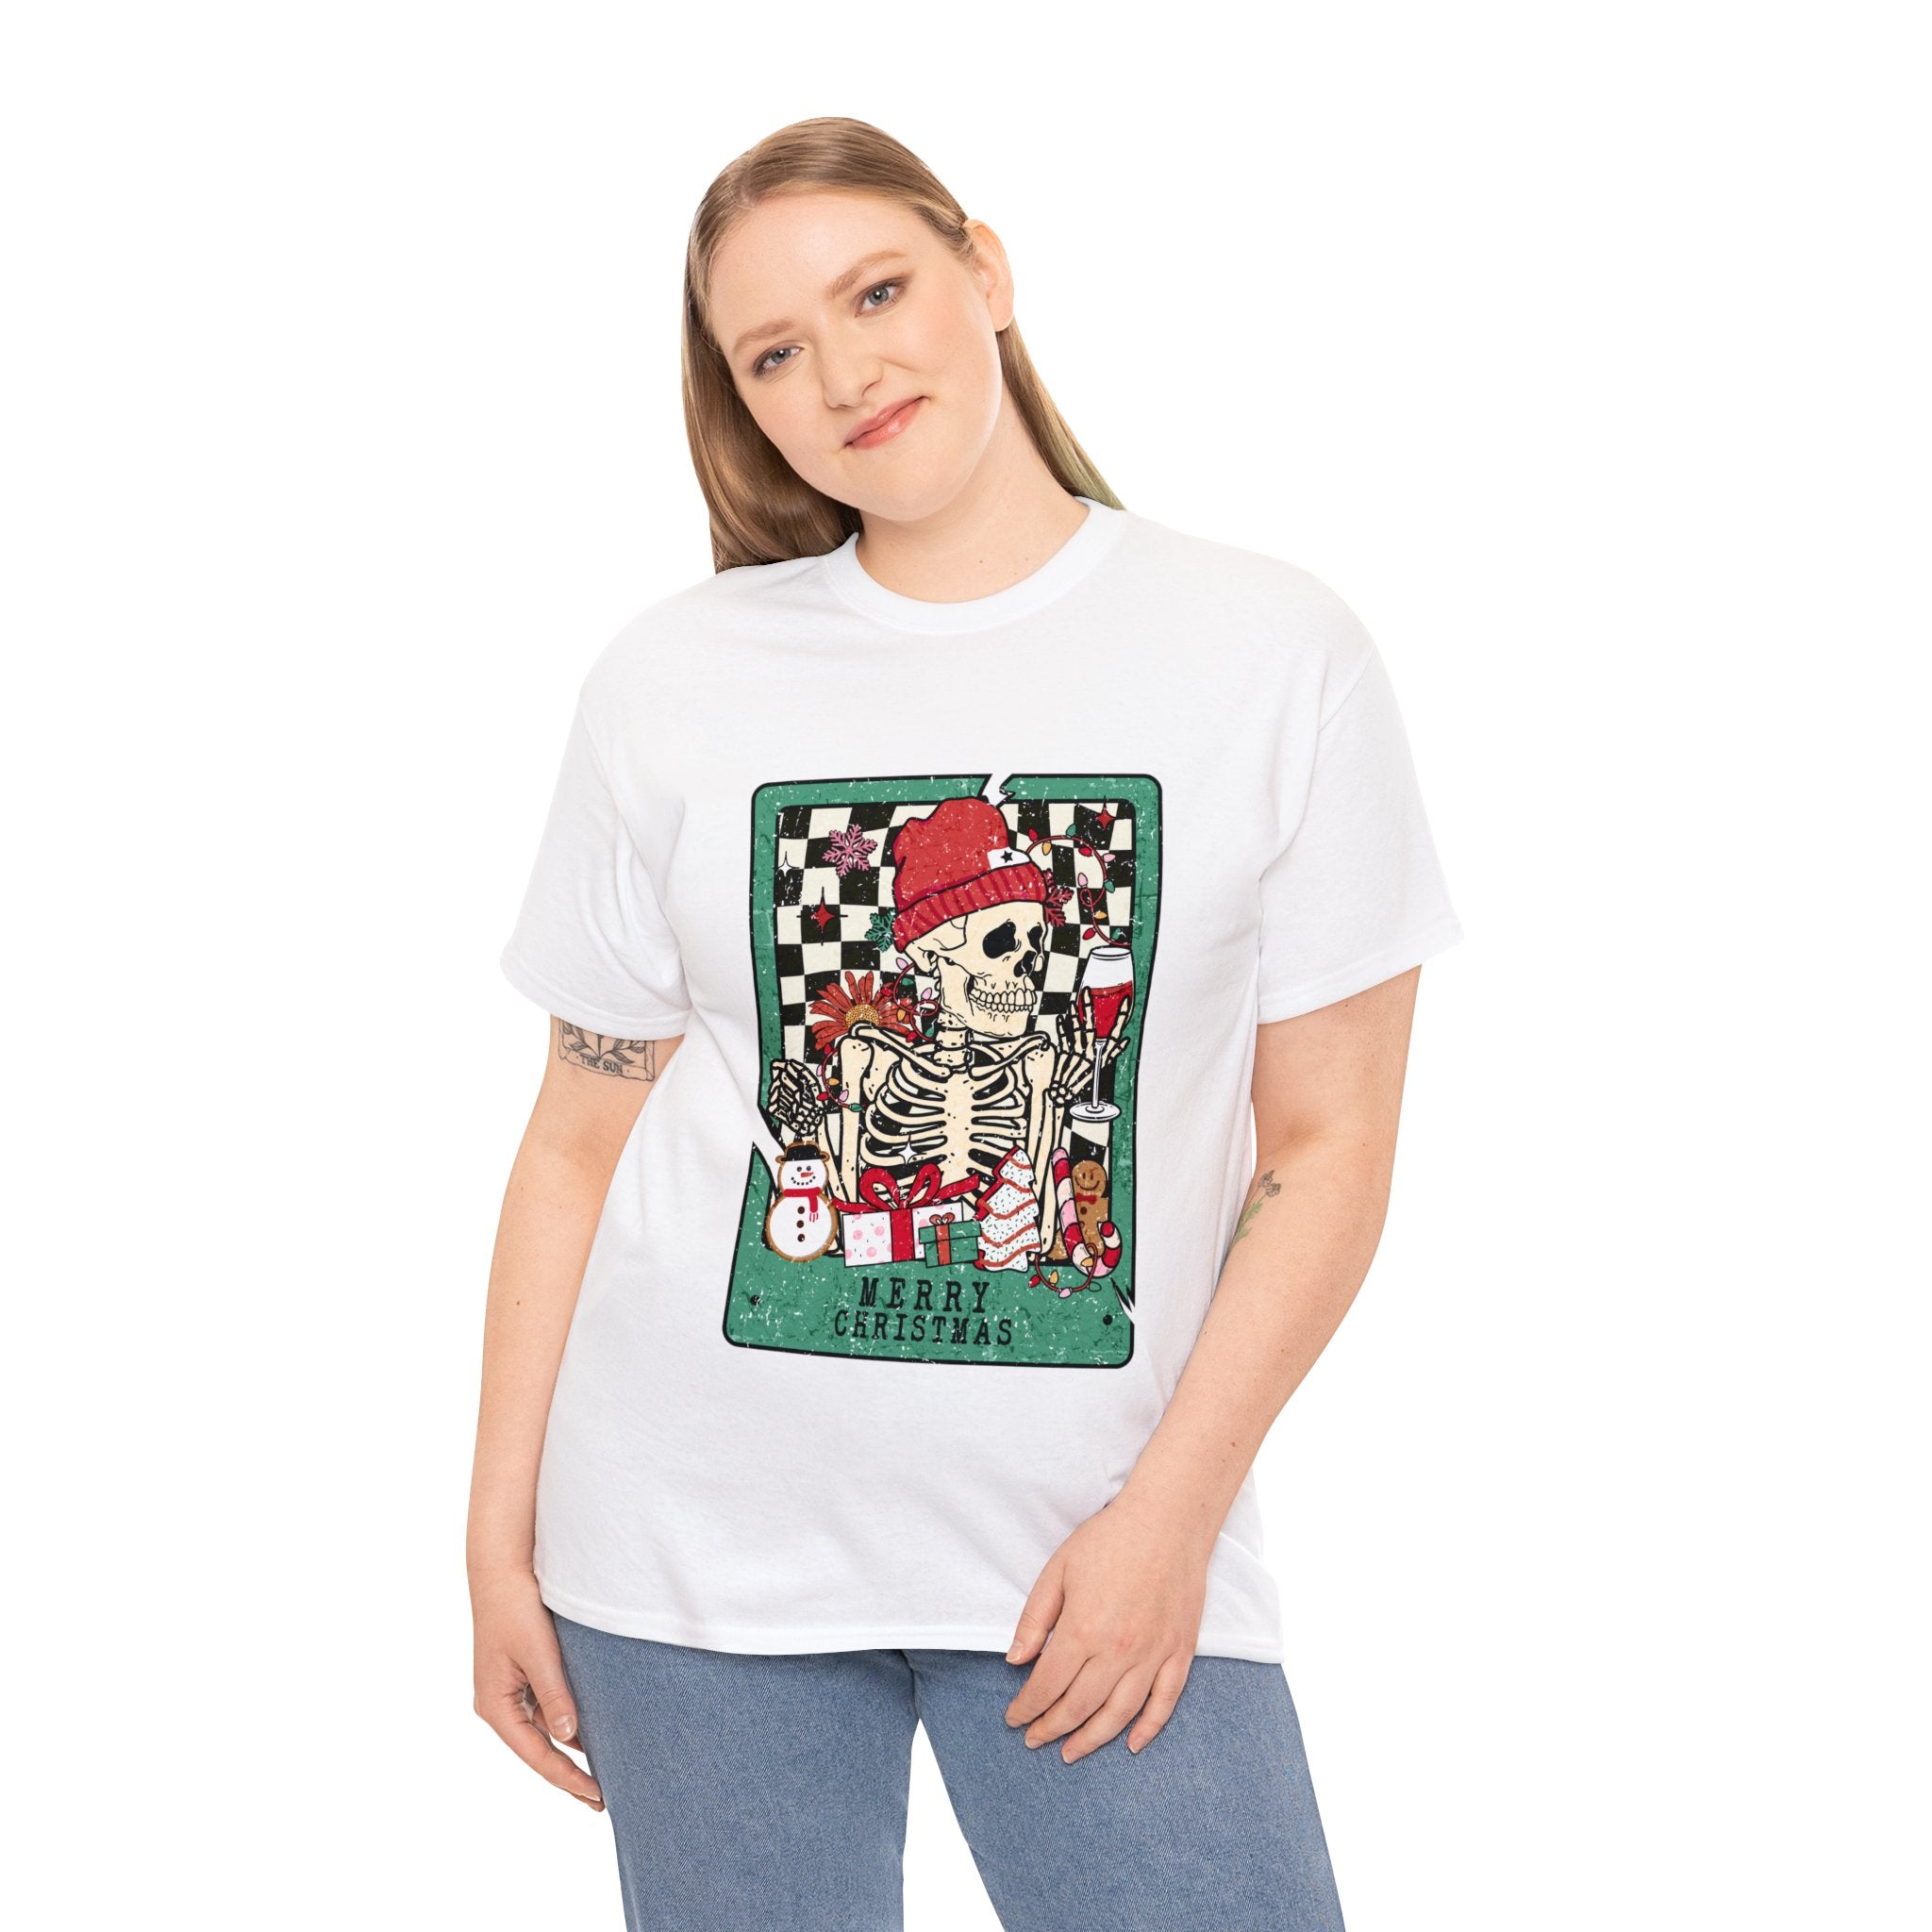 Tödliches Weihnachts-T-Shirt